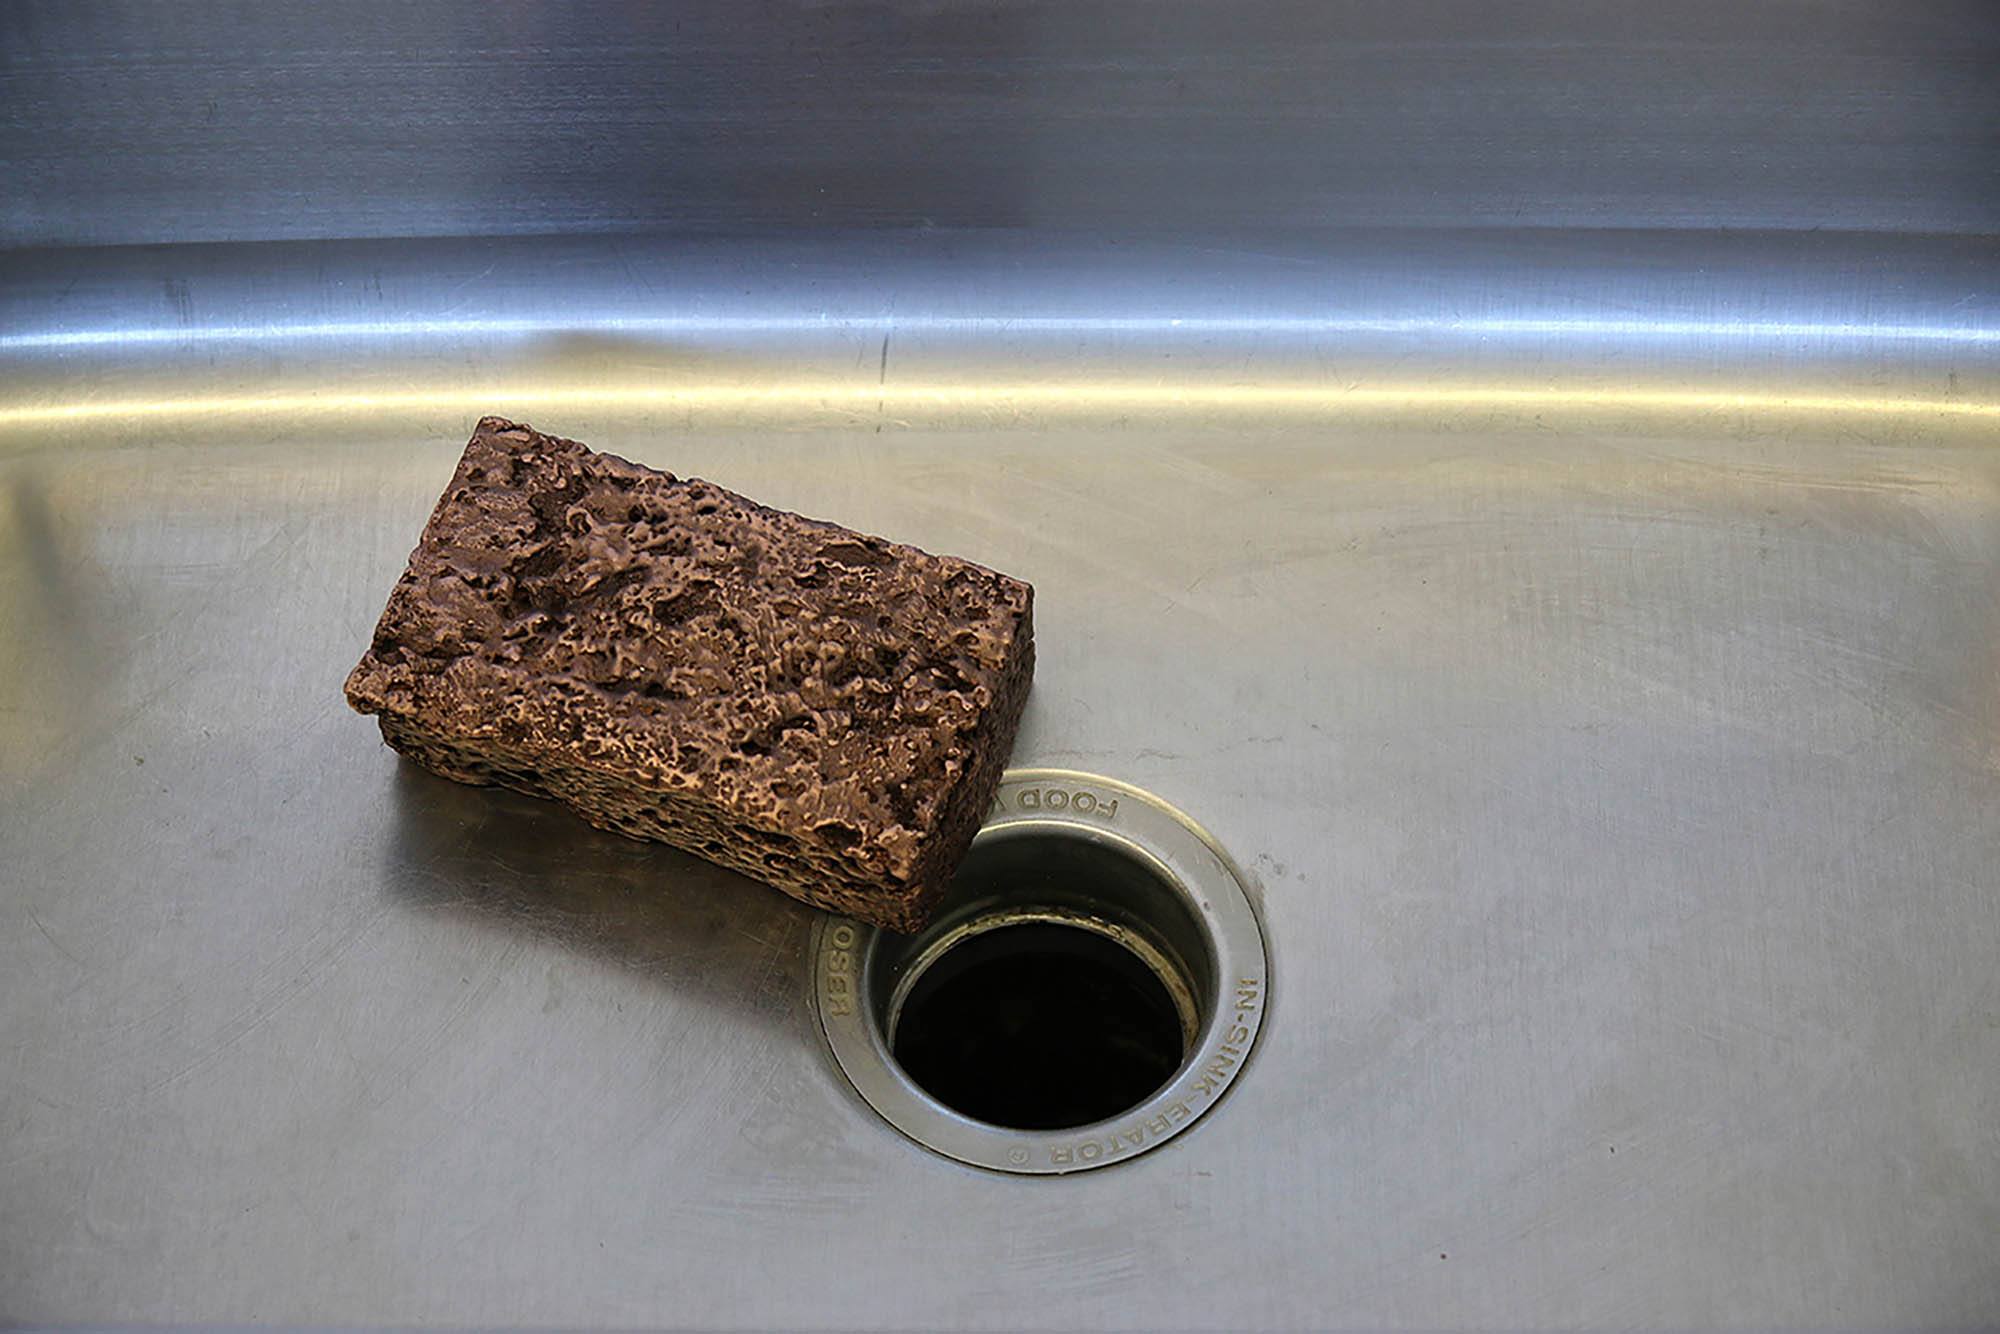 A sponge in an empty metal sink